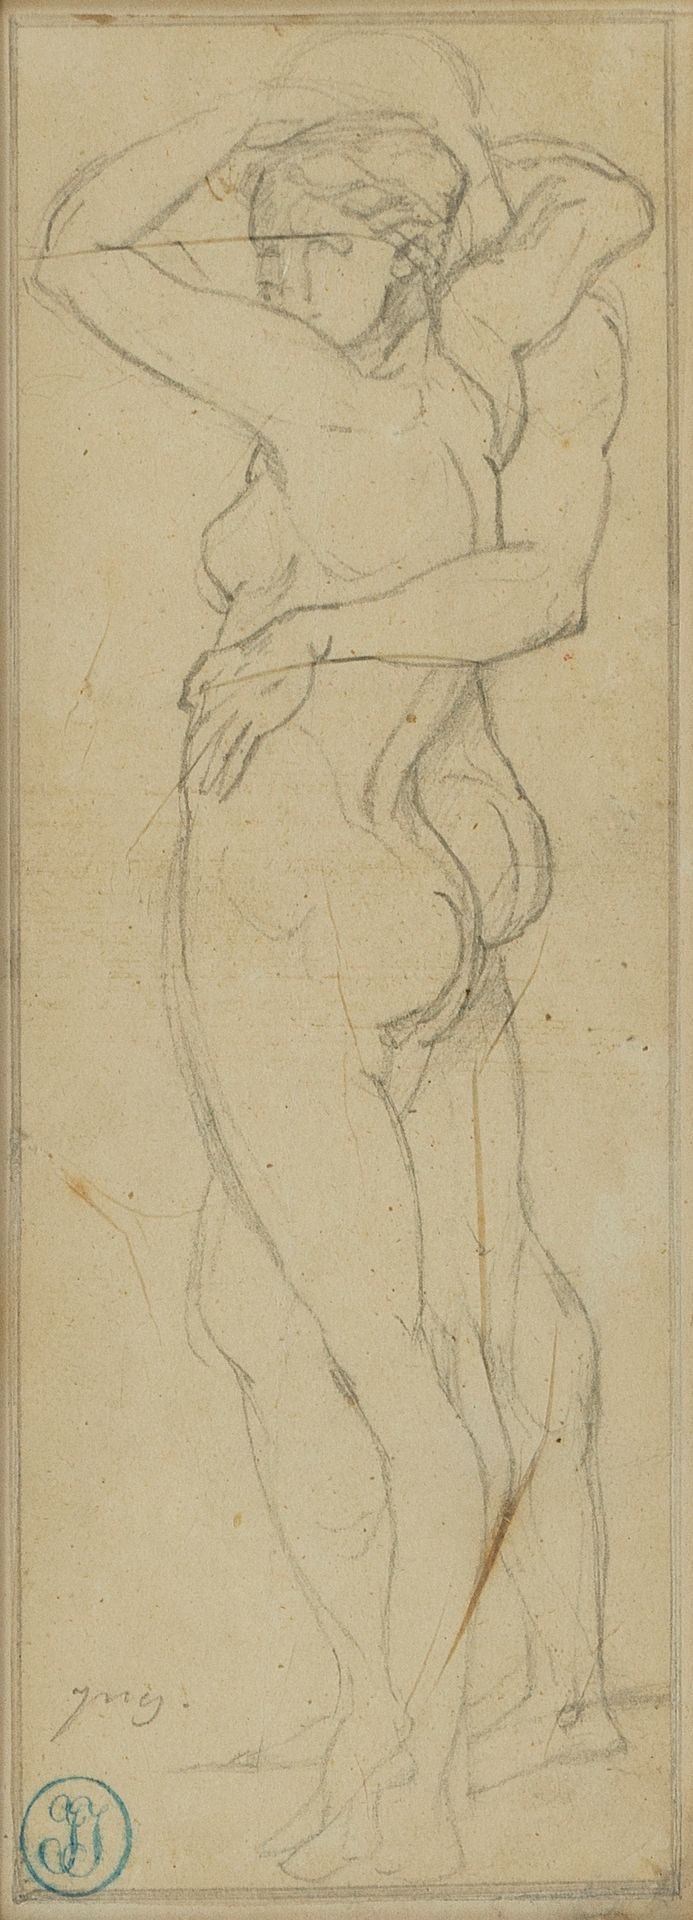 Null 让-奥古斯特-多米尼克-安格尔（1780-1867 年）
Etude de personnages, mine de plomb sur papier&hellip;